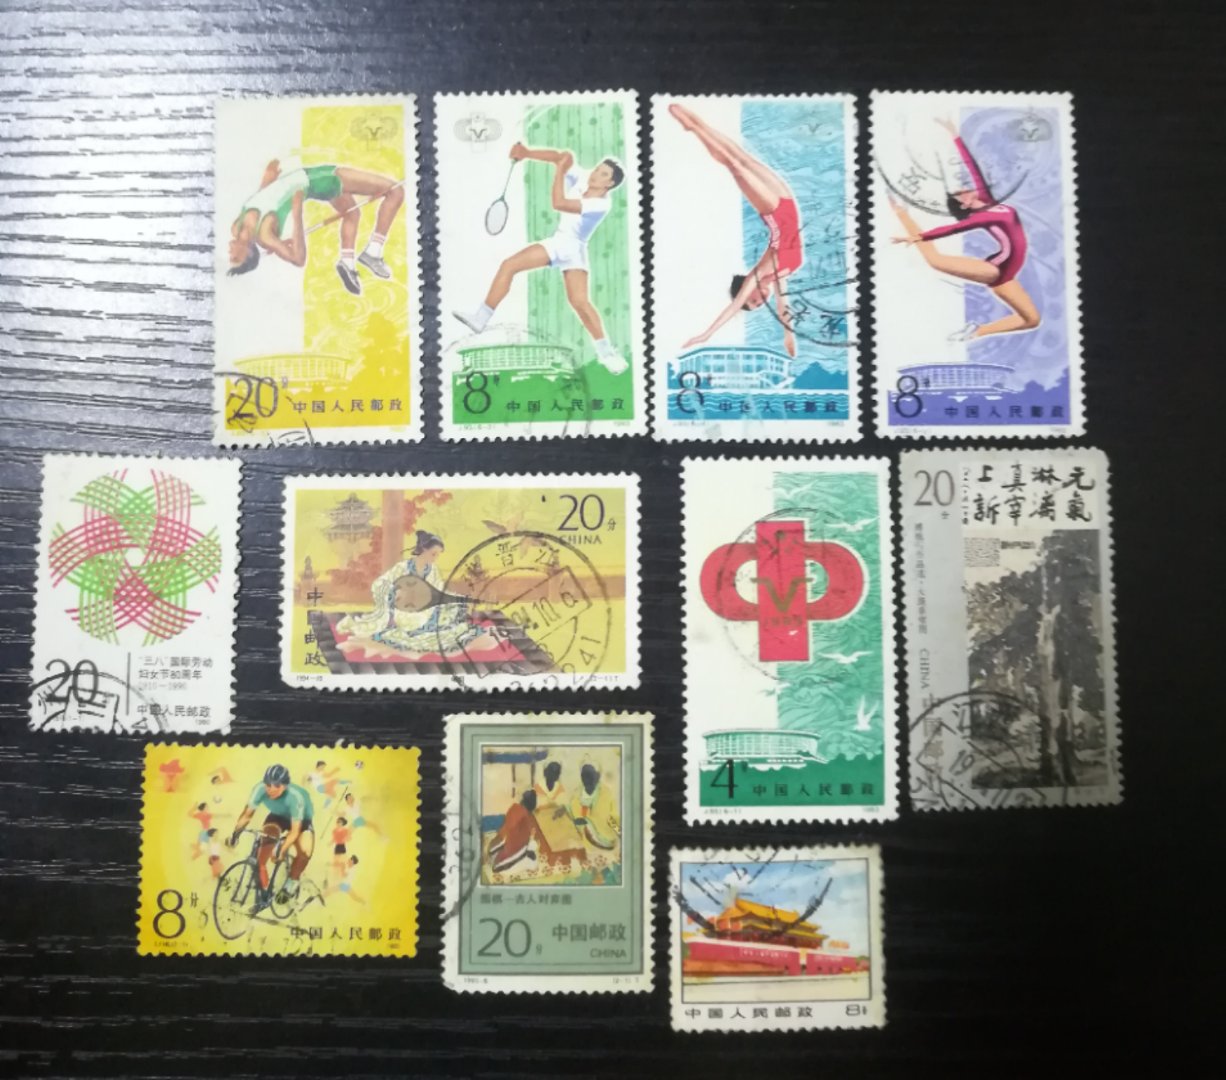 122 分享到: 一堆信销邮票共11张,有喜欢的千万不要错过.